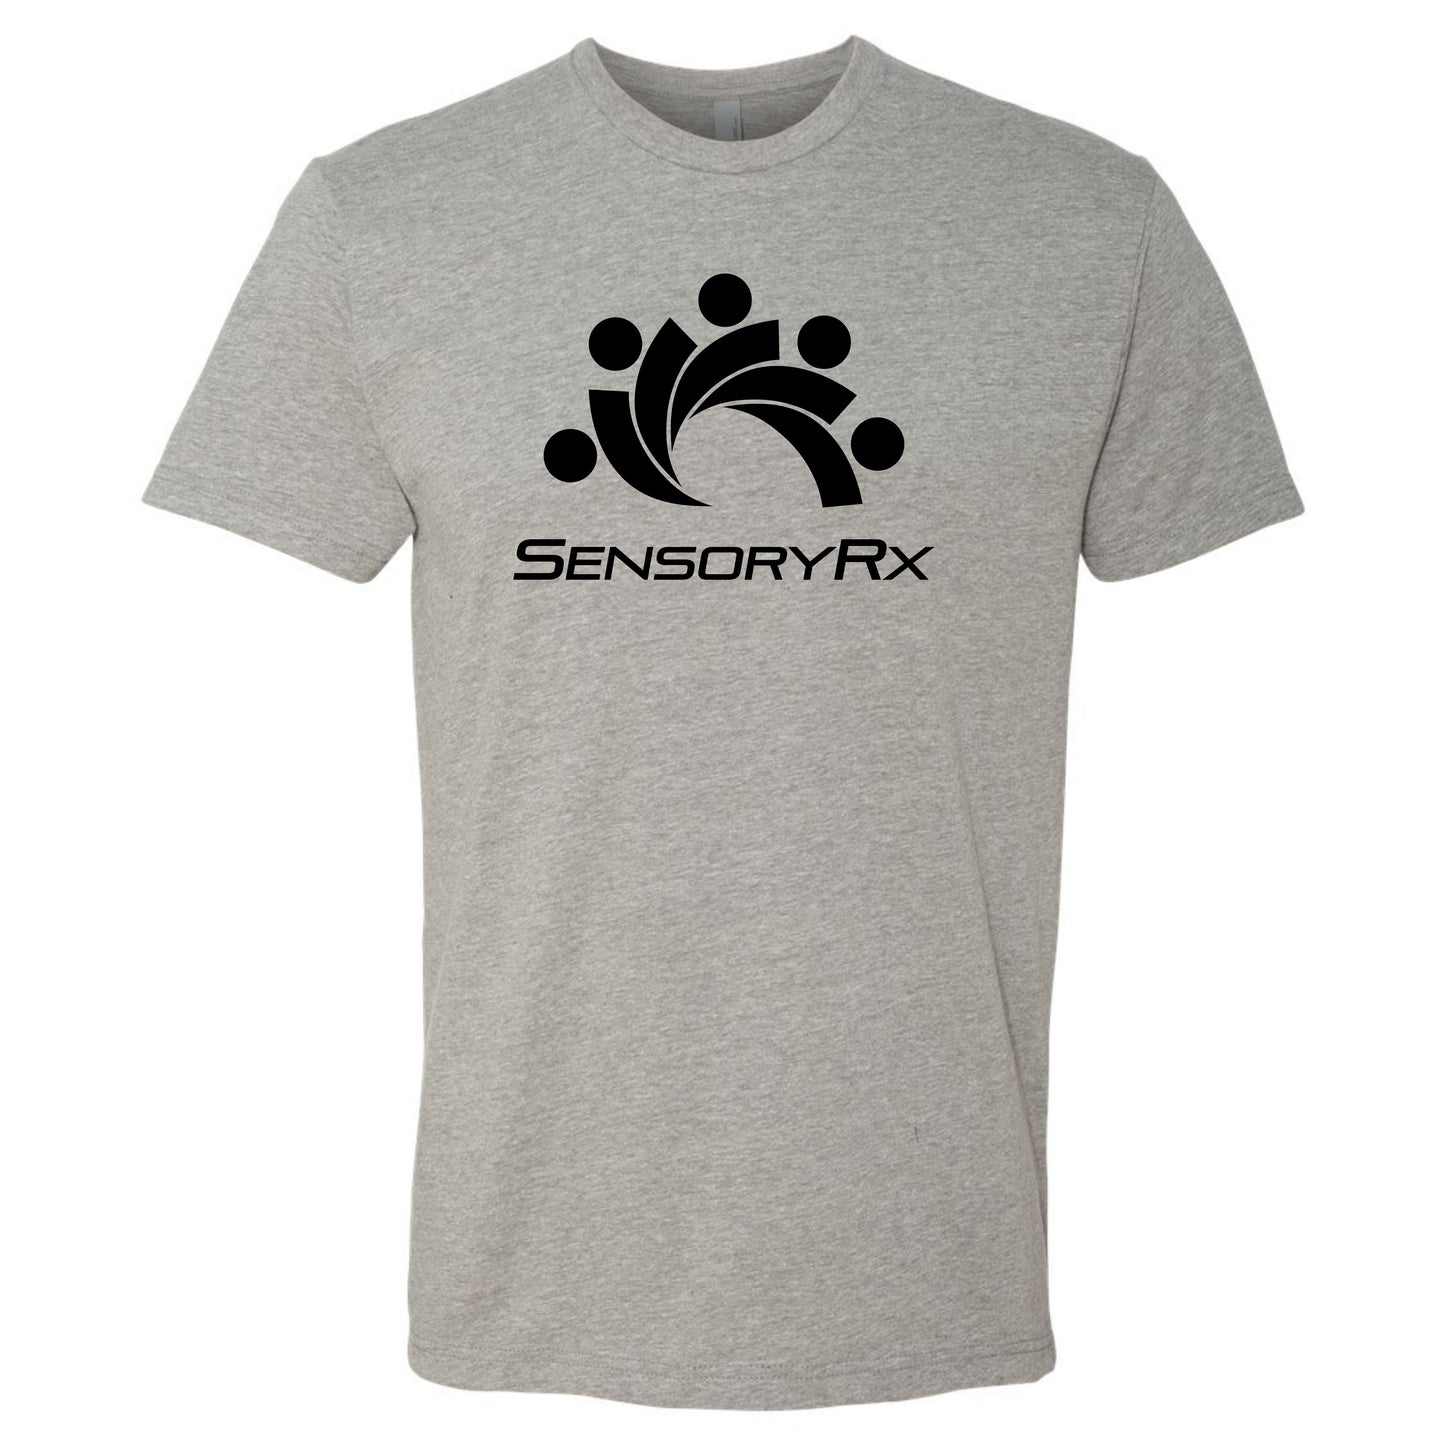 Grey tshirt with a black SensoryRx logo